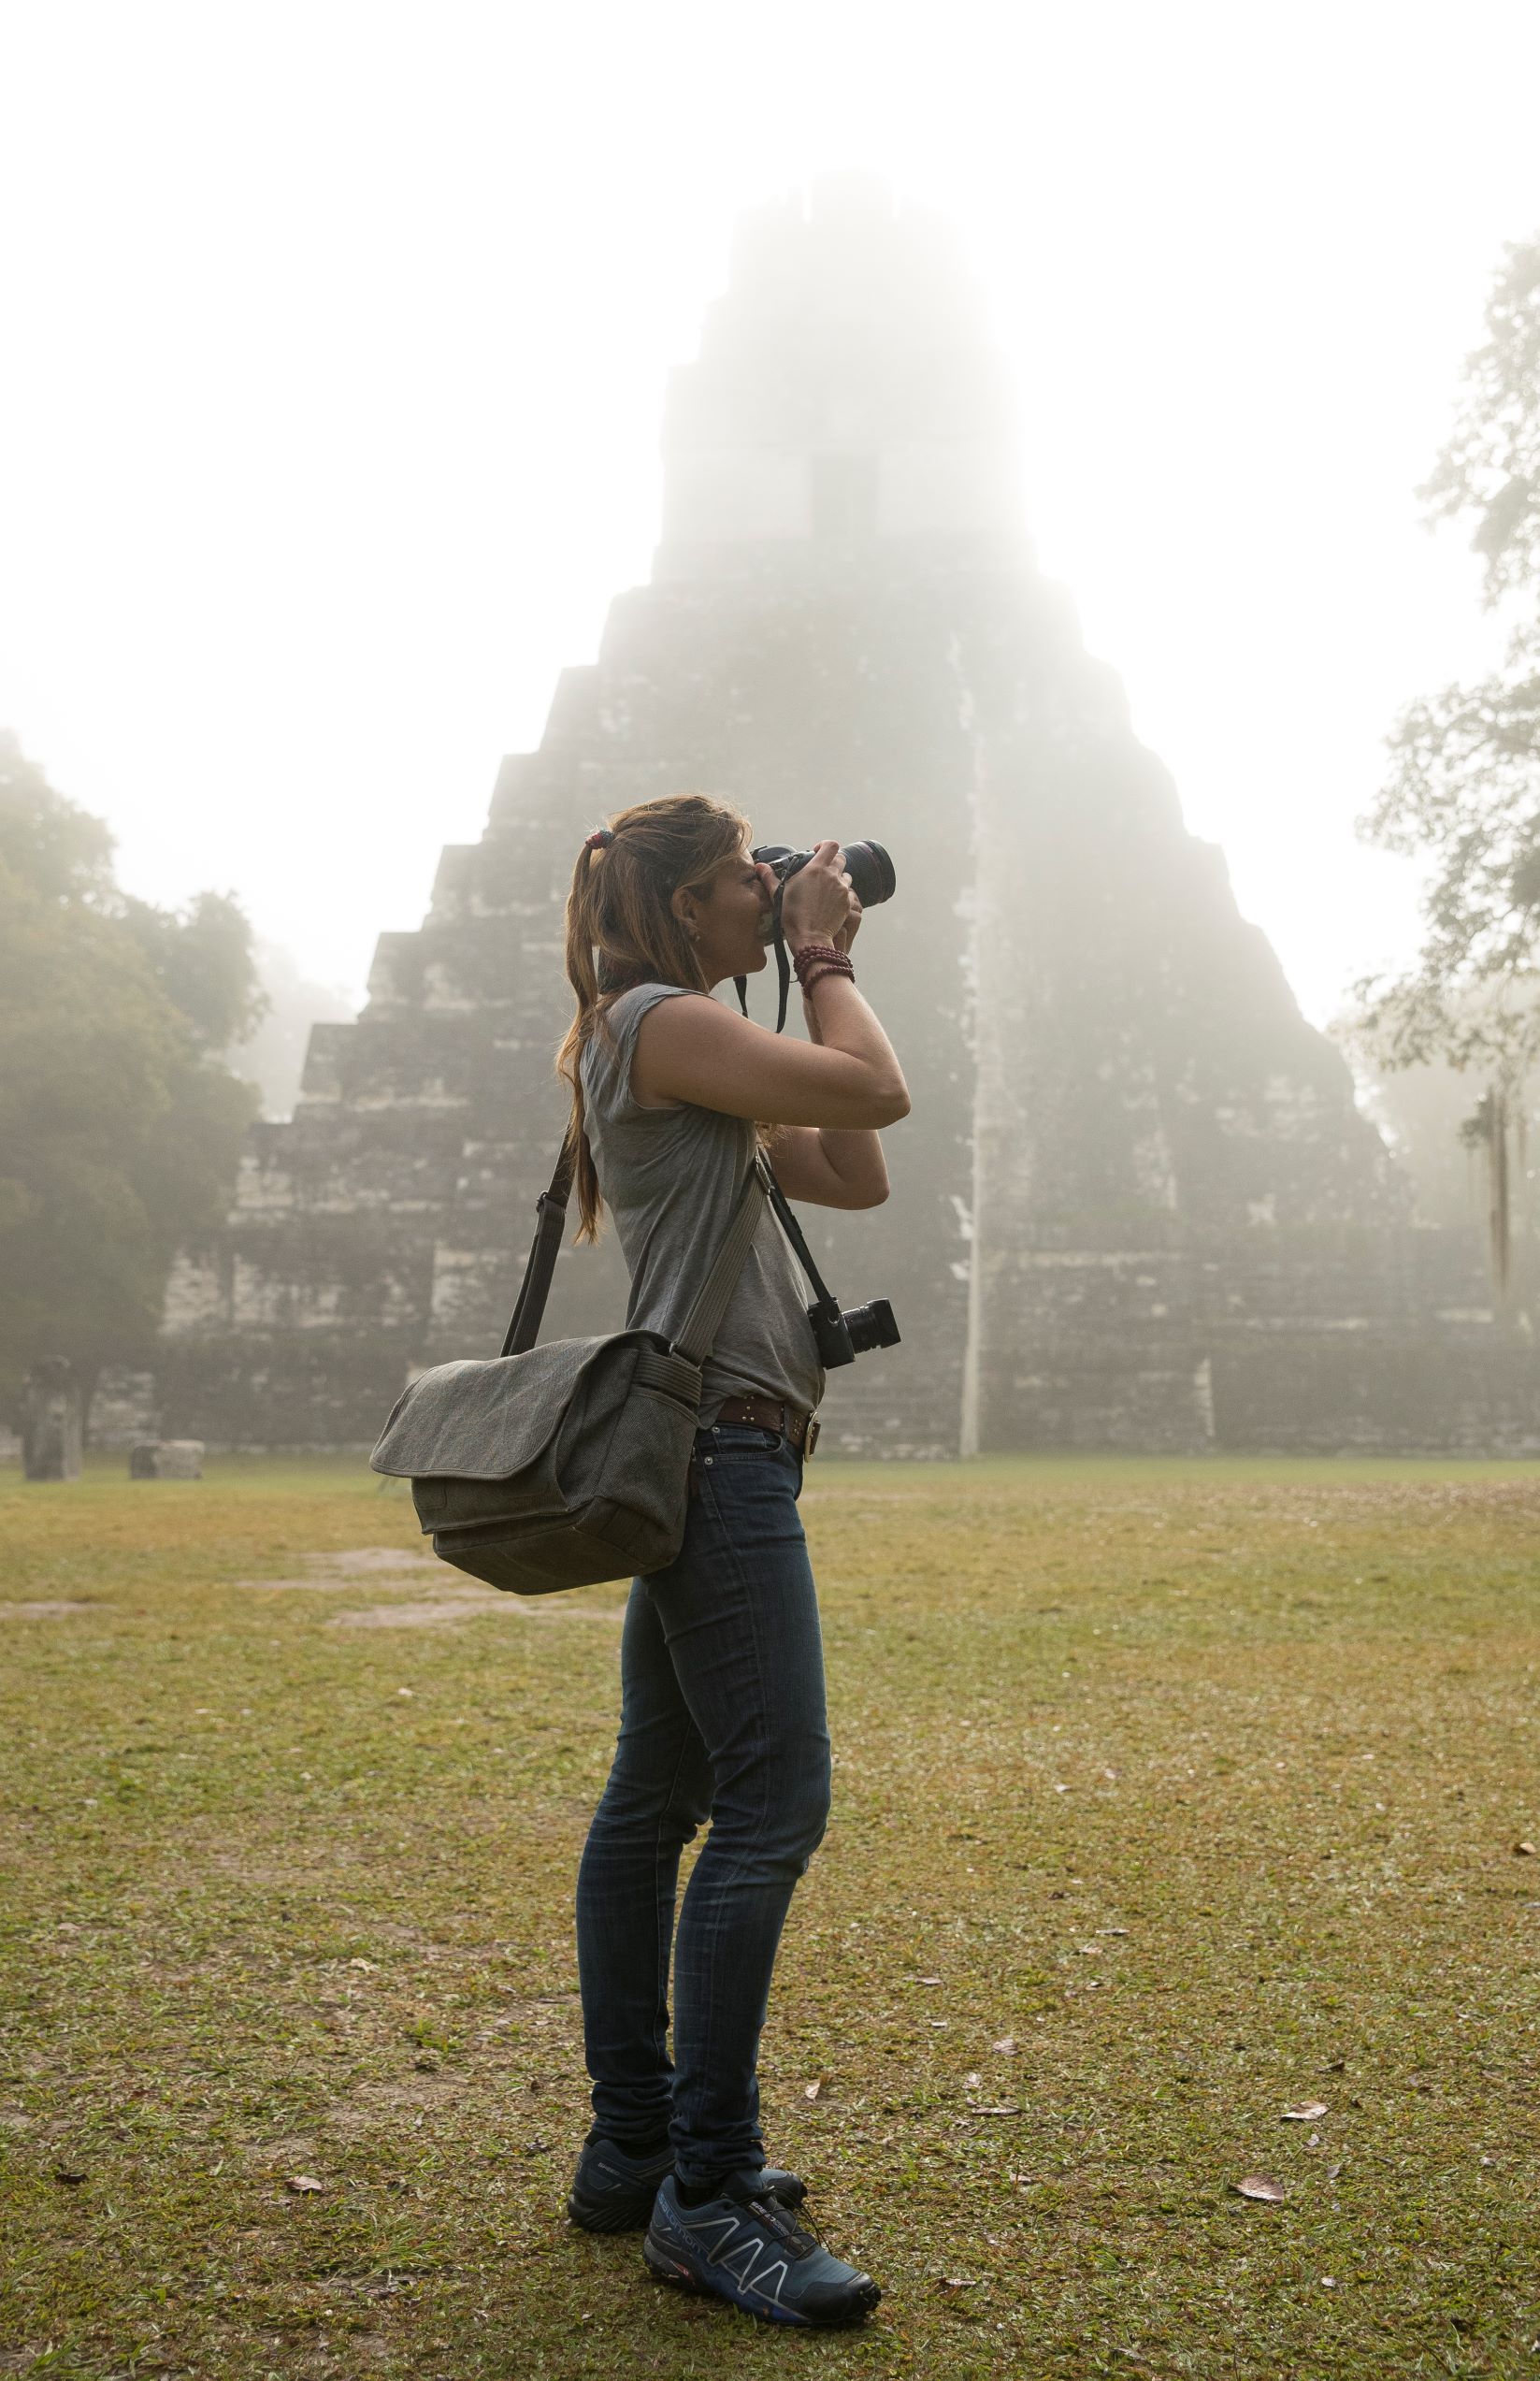 Jody taking photos near a Mayan temple